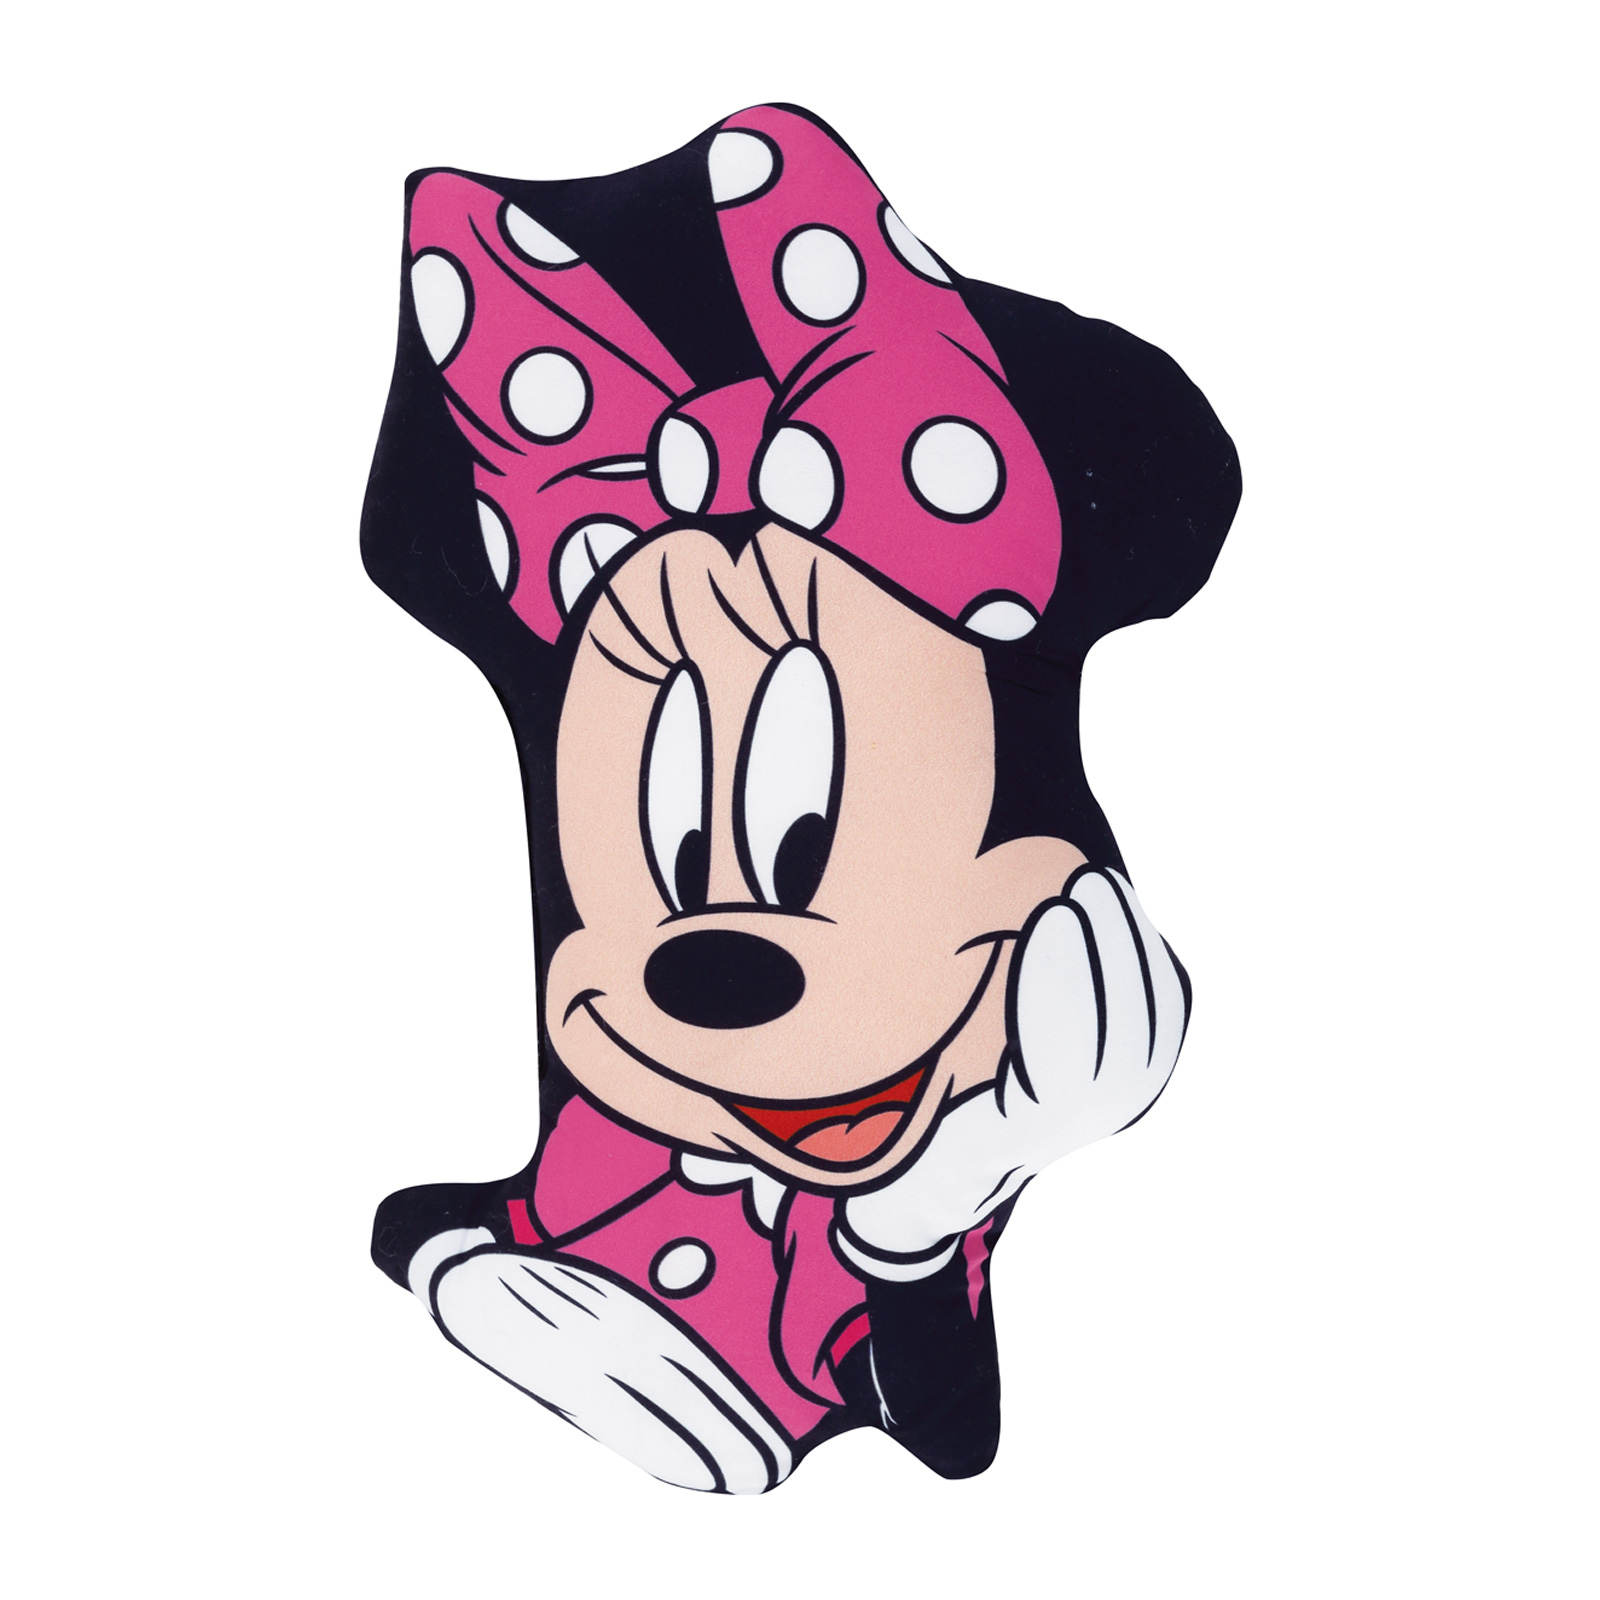 Μαξιλάρι Διακοσμητικό Microfiber 34×23εκ. Minnie 5508 Disney (Ύφασμα: Microfiber, Χρώμα: Ροζ) – Disney – 533342305508